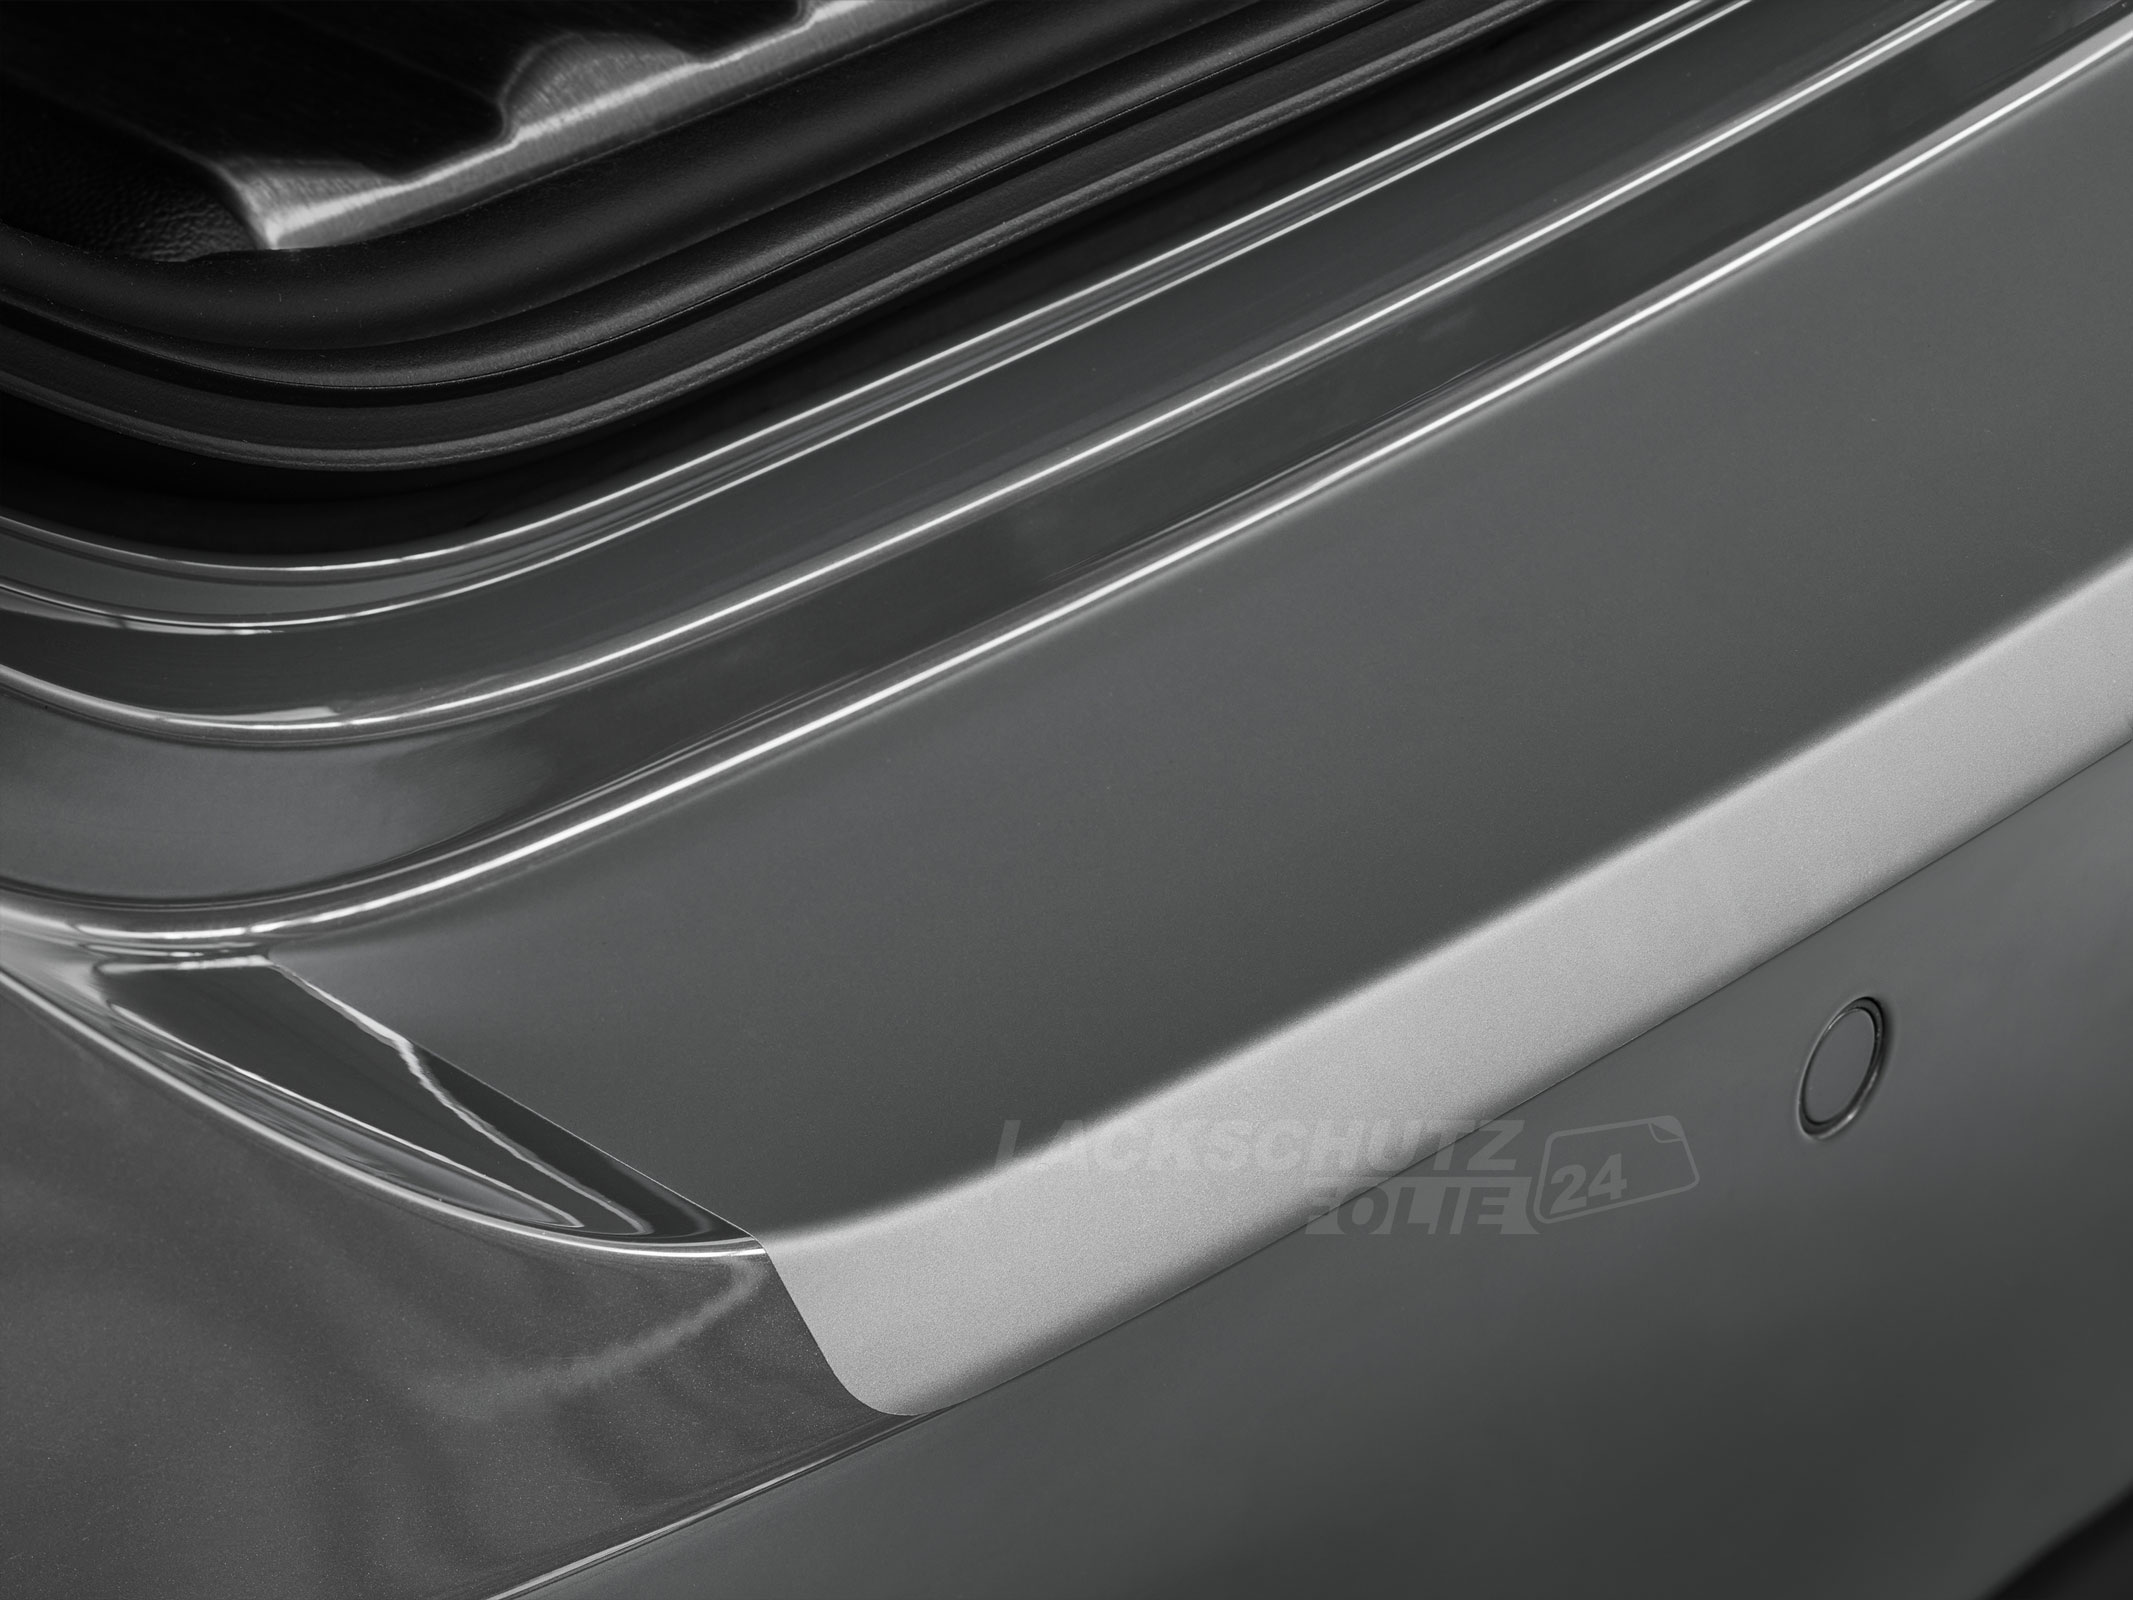 Ladekantenschutzfolie - Transparent Glatt MATT 110 µm stark  für Audi A4 Limousine B8, Typ 8K, BJ 03/2008-2015